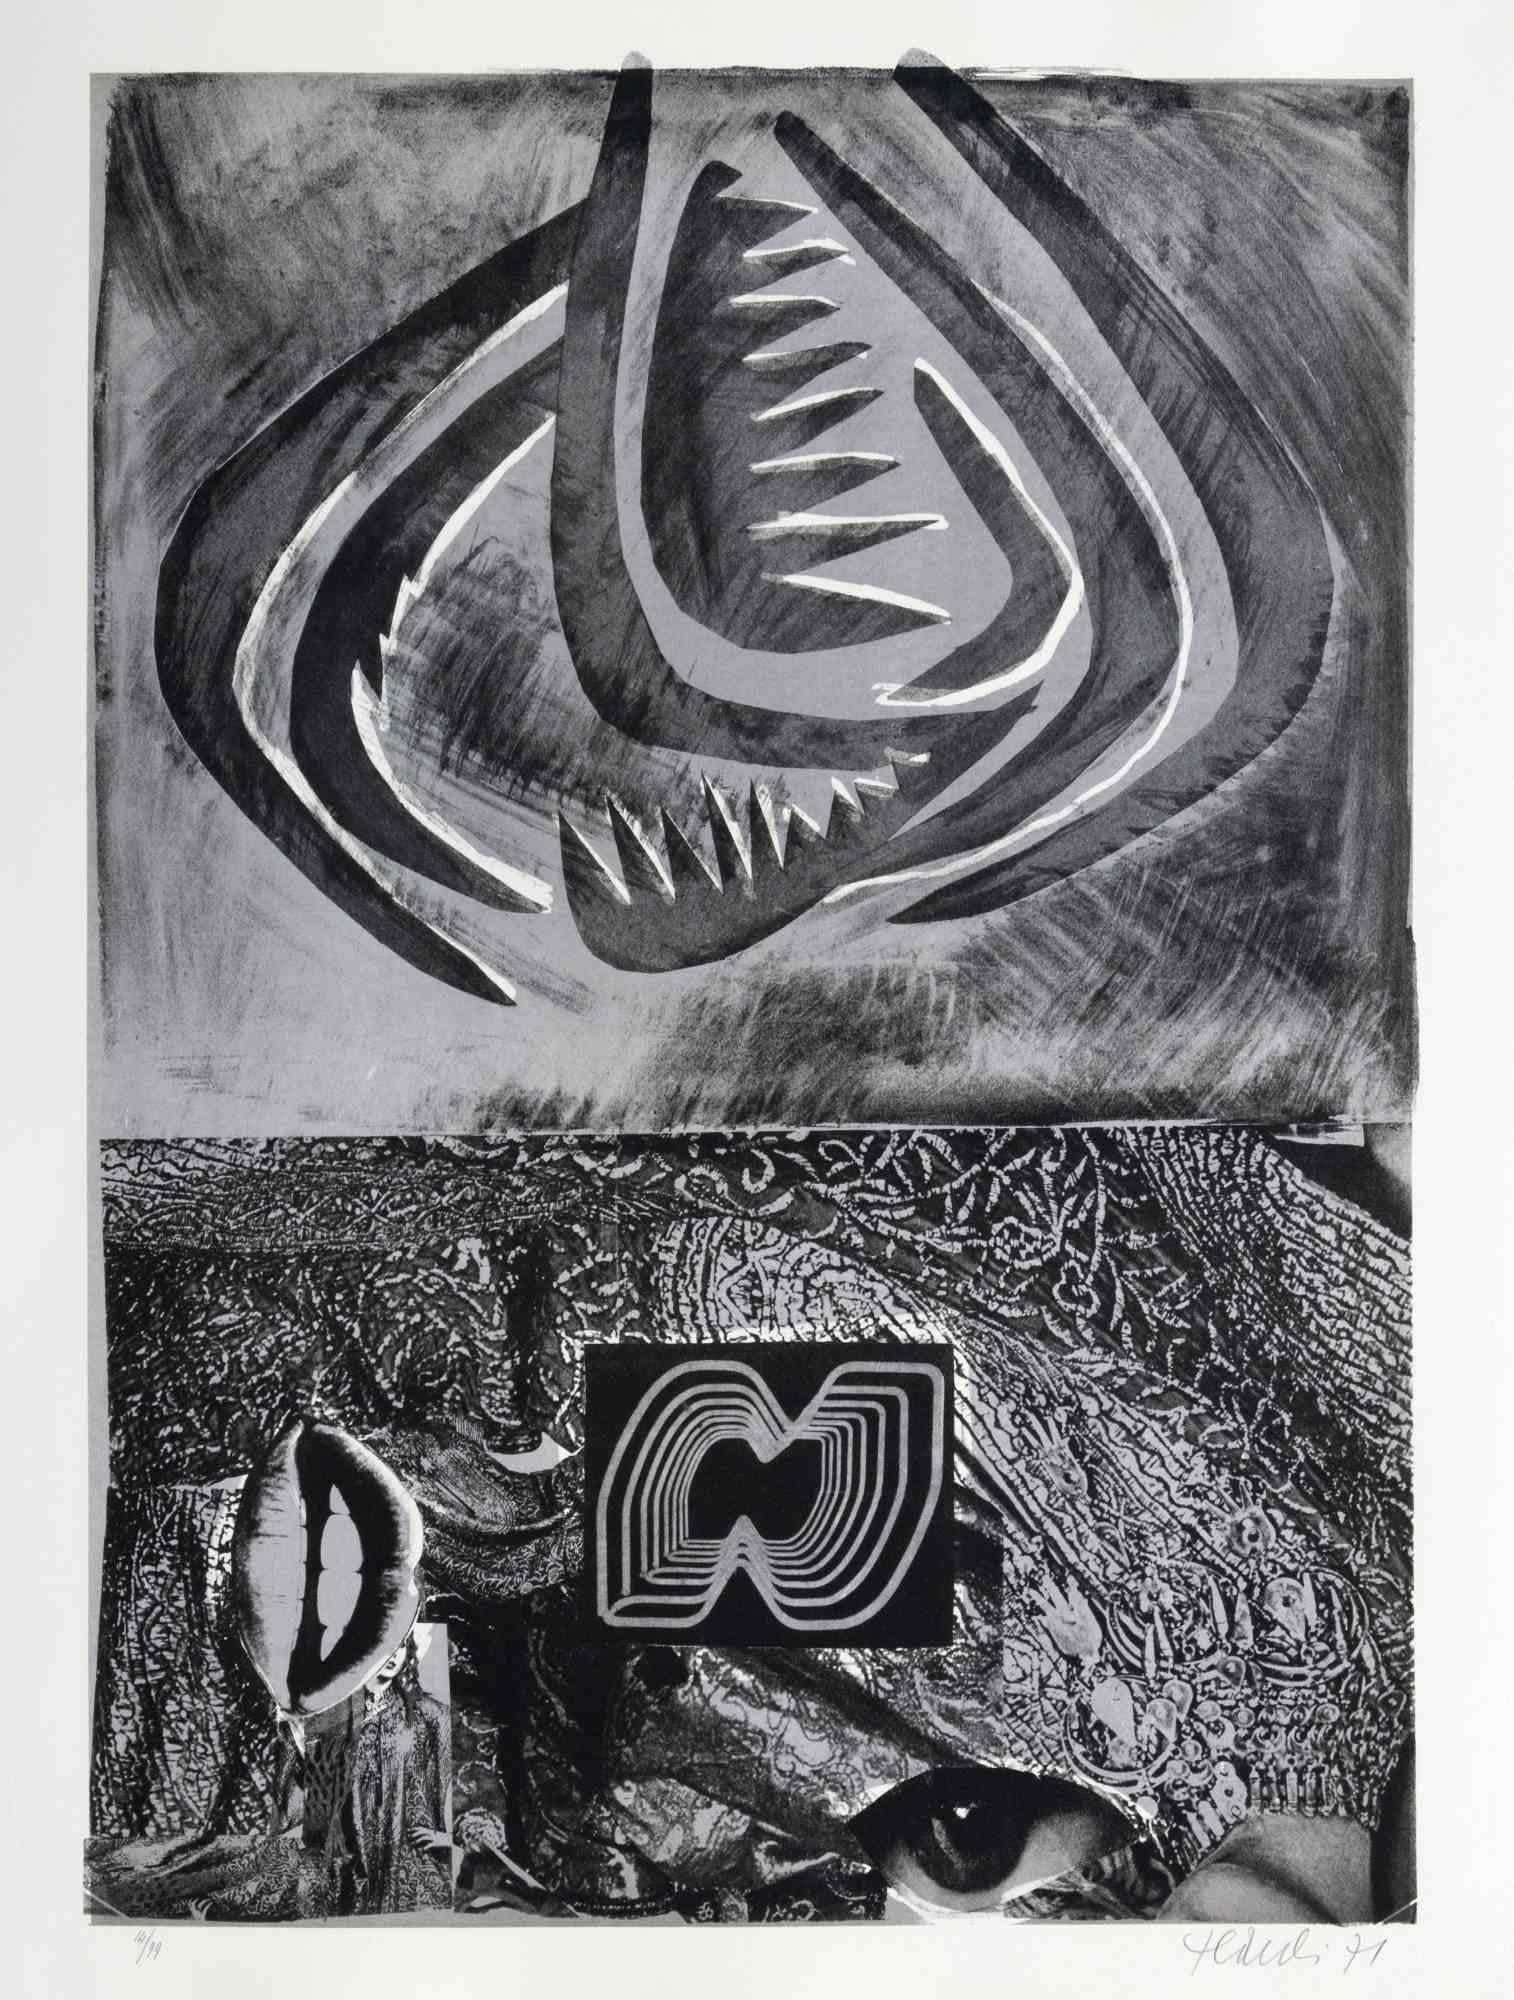 Tribal est une œuvre d'art contemporain réalisée par Nanis en 1971.

Lithographie en noir et blanc.

Signé à la main et daté dans la marge inférieure.

Numéroté dans la marge inférieure.